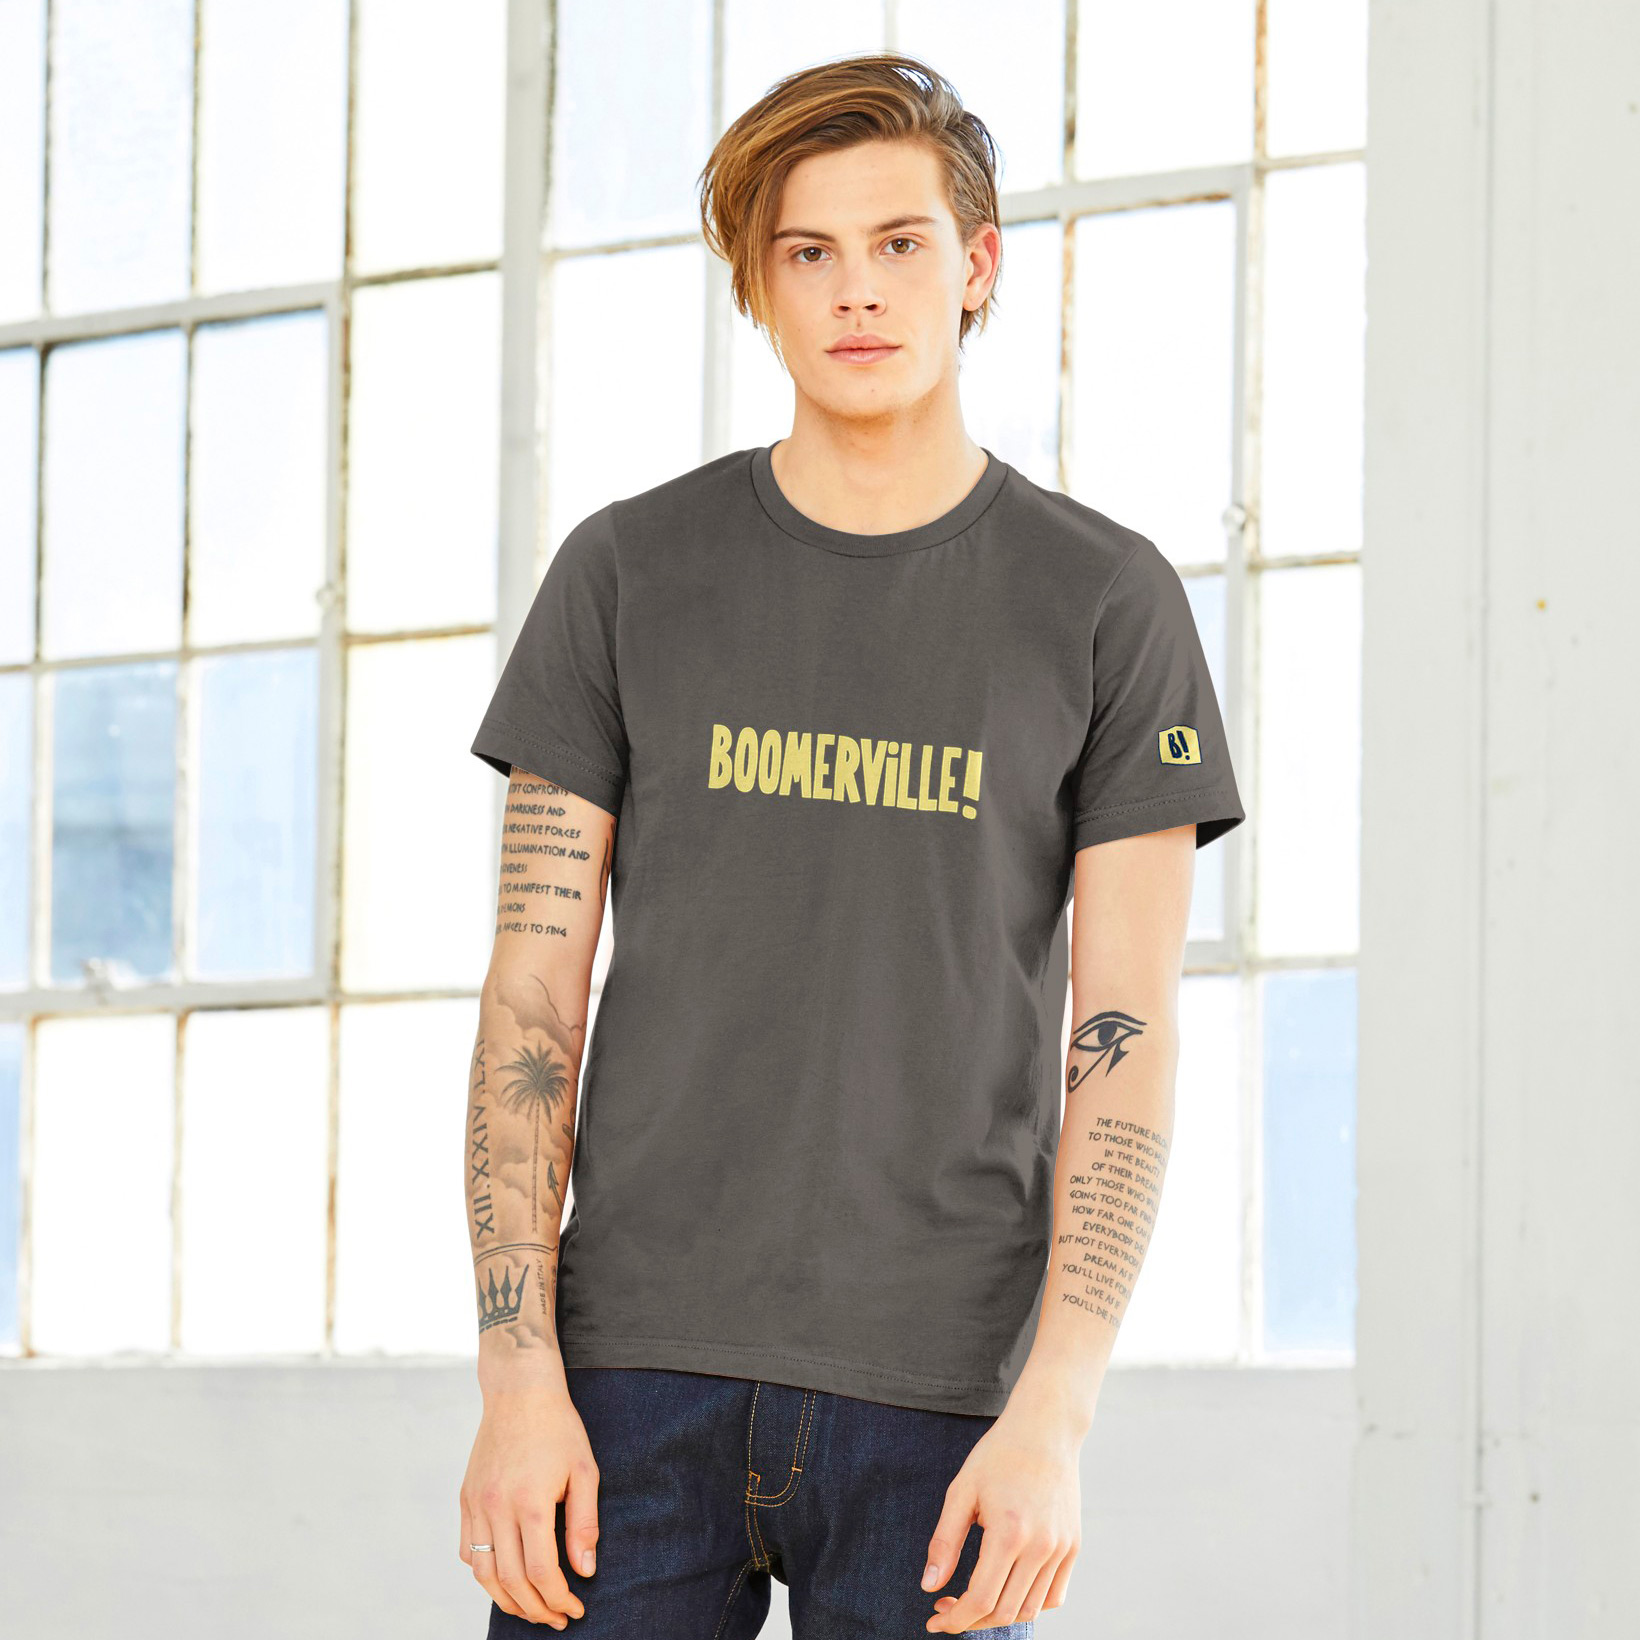 Boomerville! print t-shirt